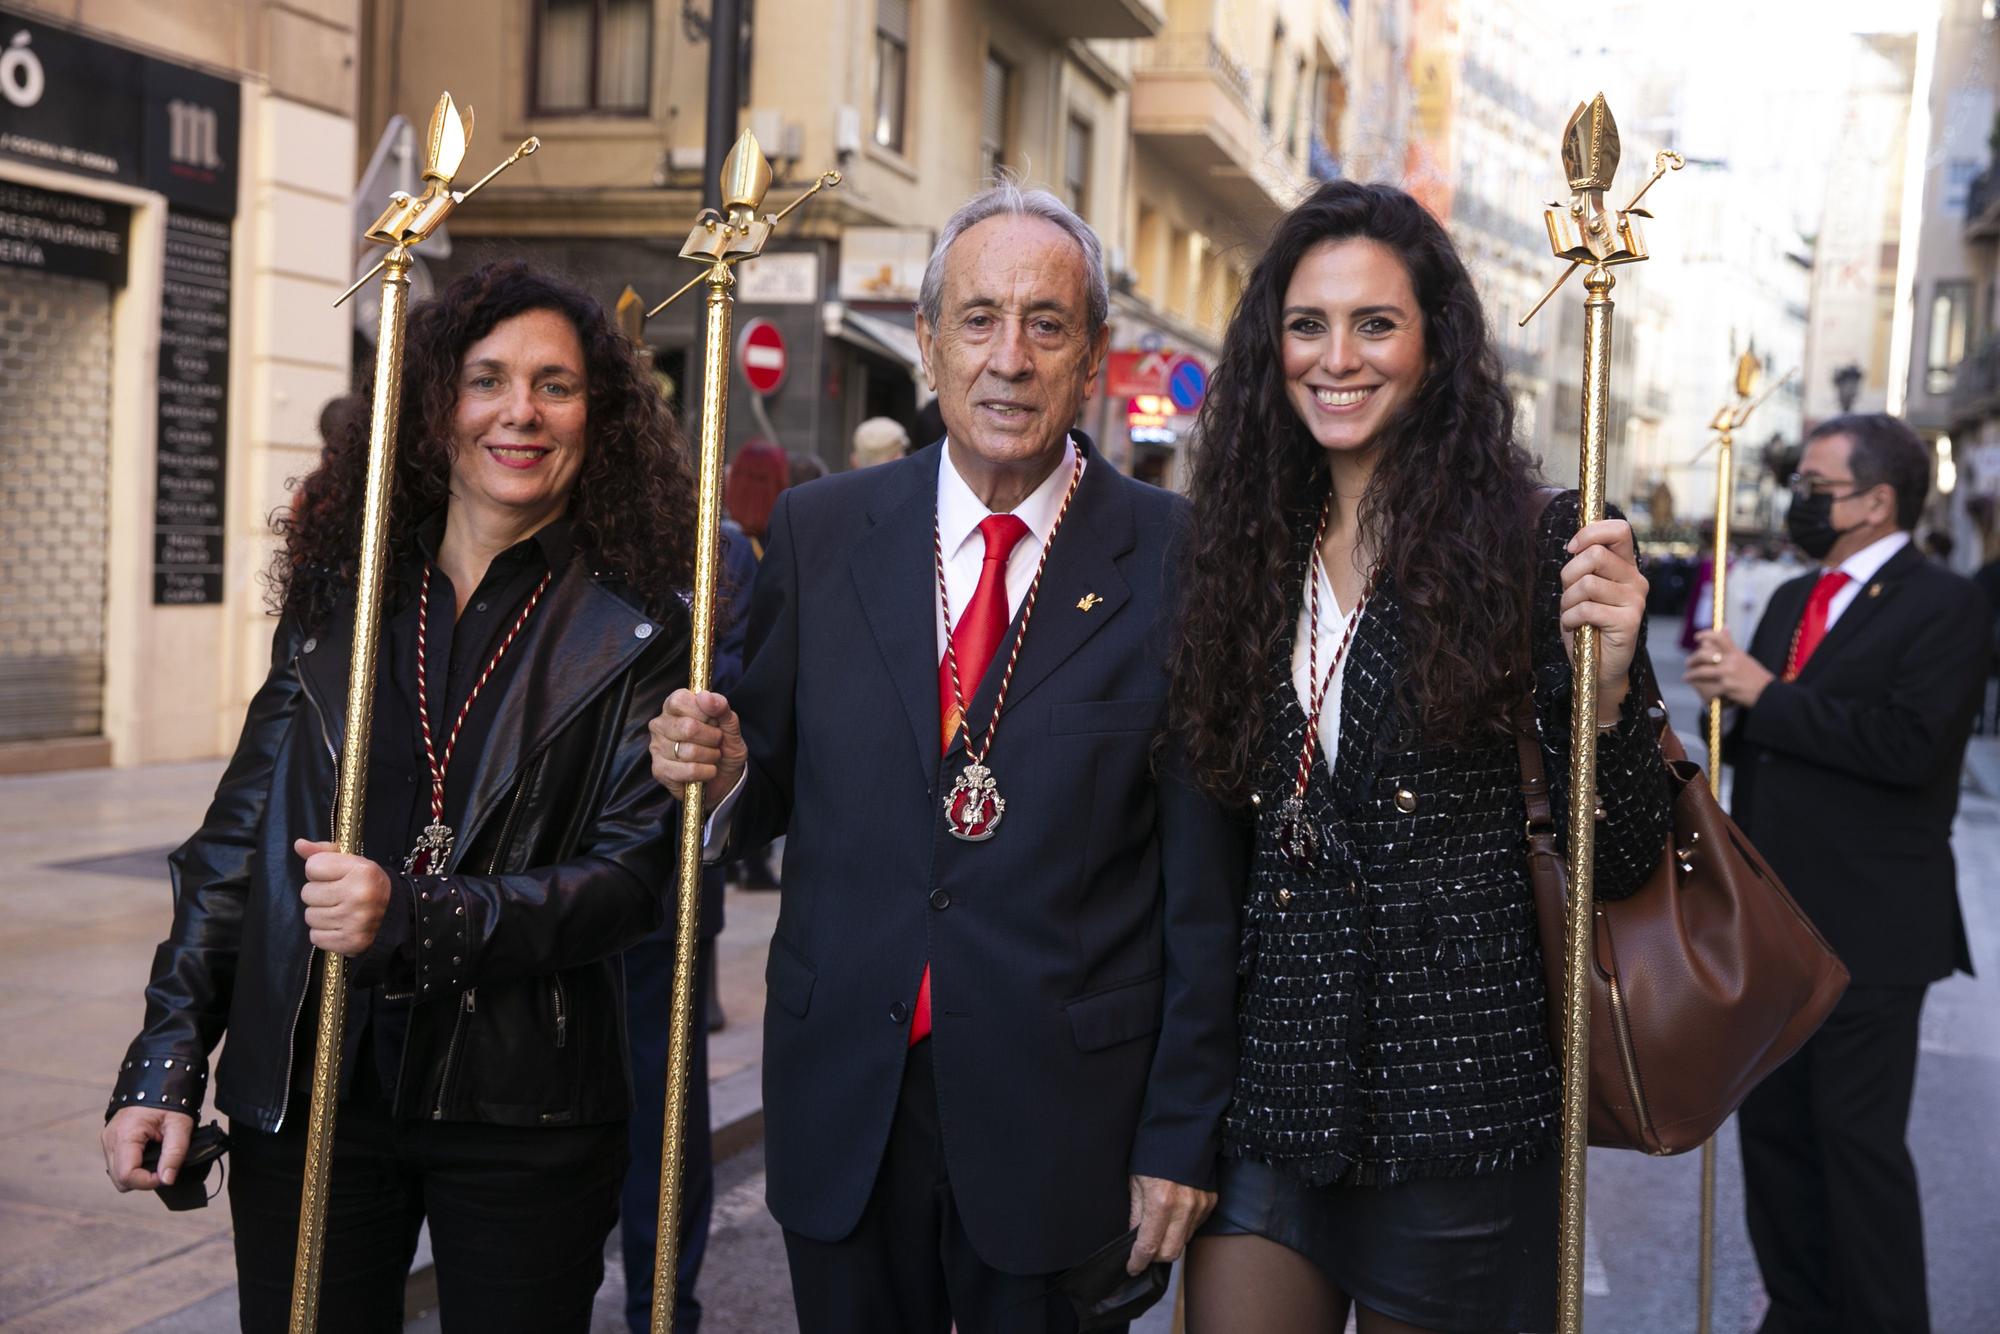 Procesión de San Nicolás y ambiente festivo en Alicante por el Día de la Constitución